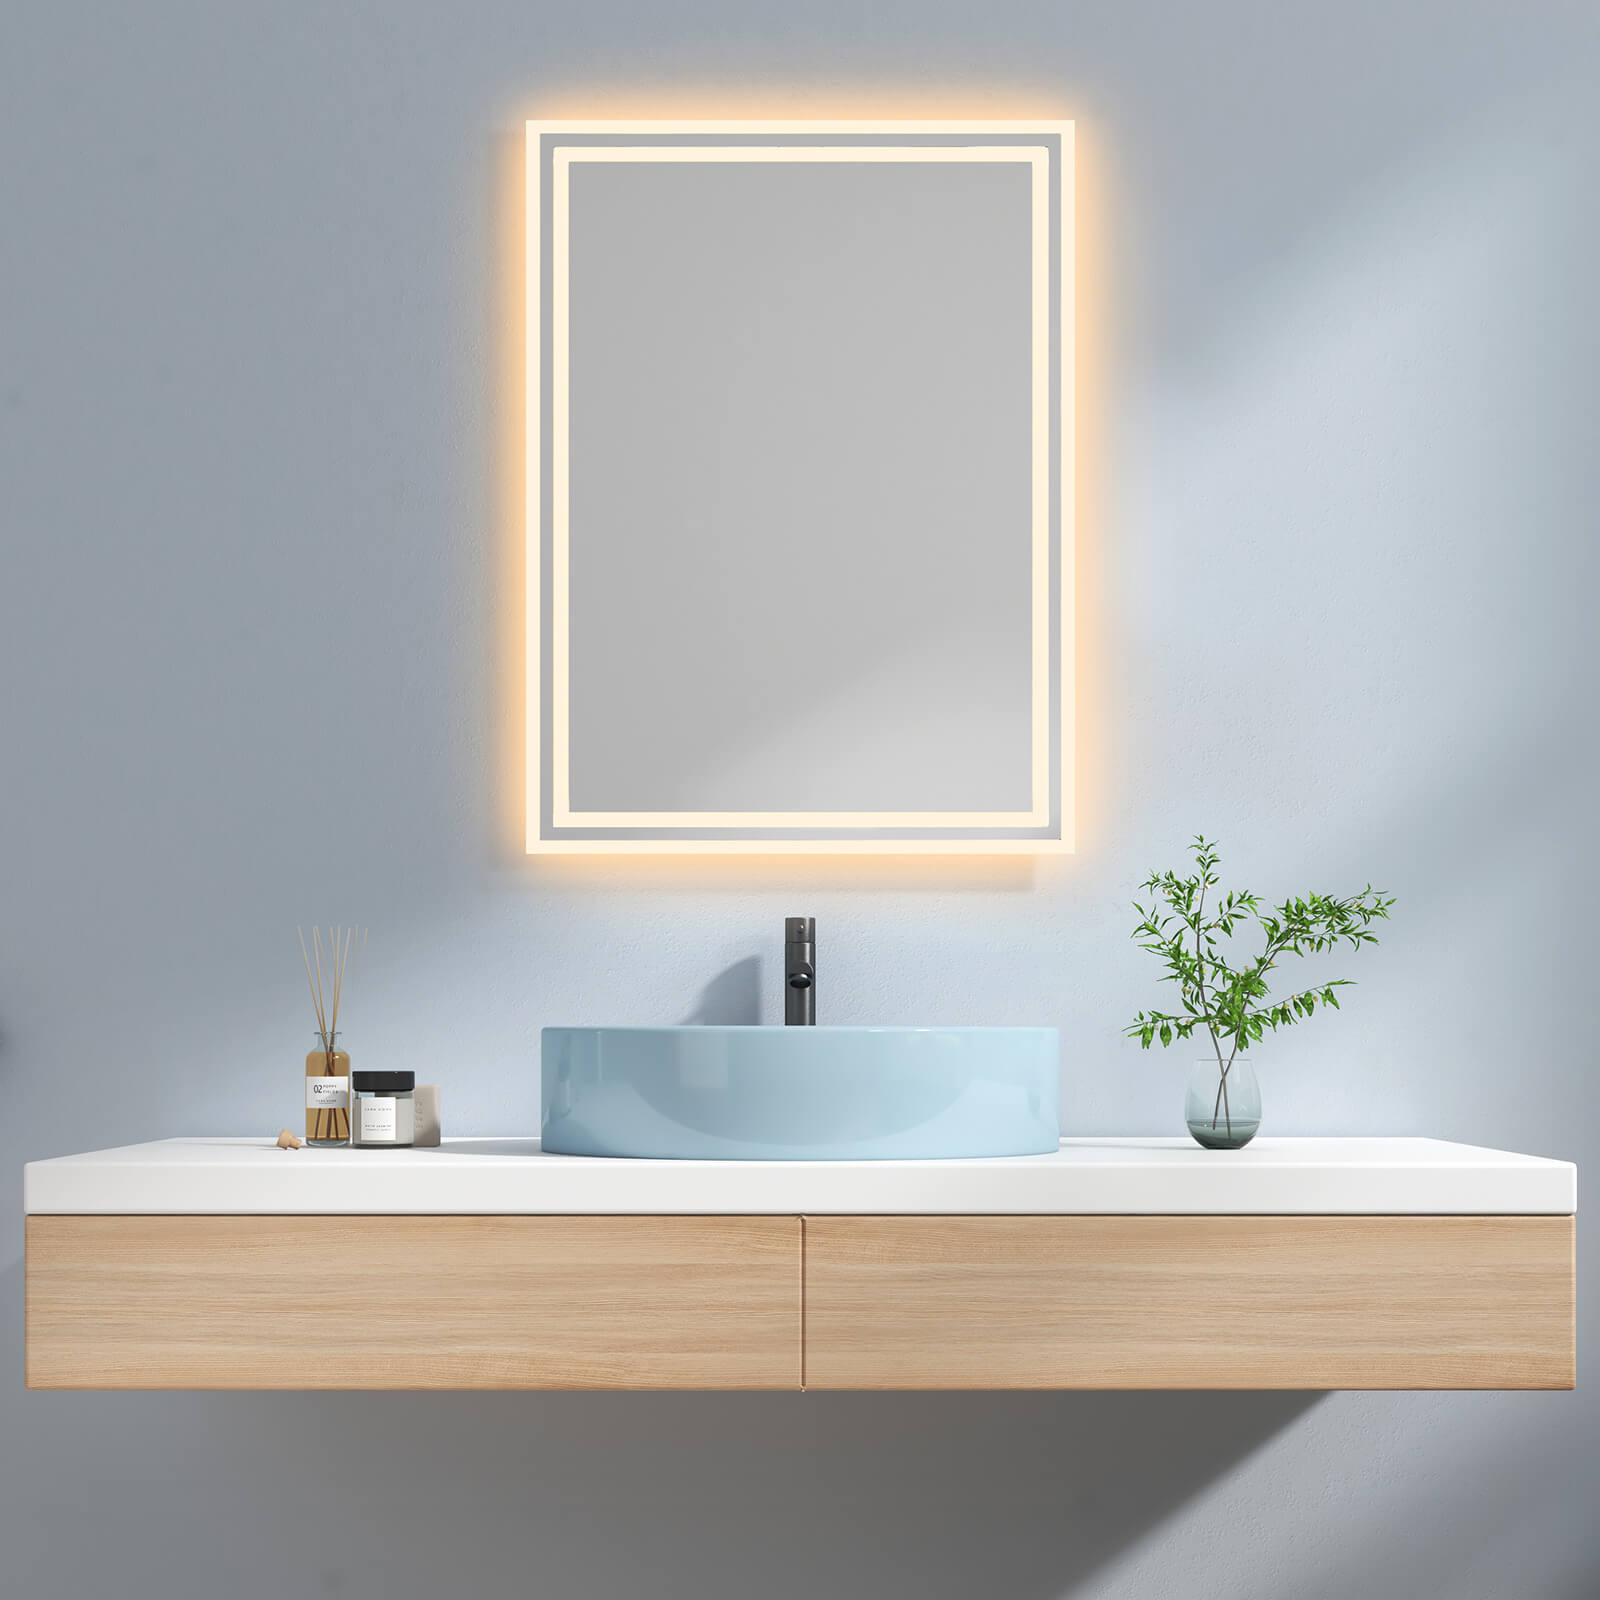 EMKE LM04 Badspiegel mit integrierter Beleuchtung und verschiedenen Funktionen, rechteckig 60×80+Warmweiß